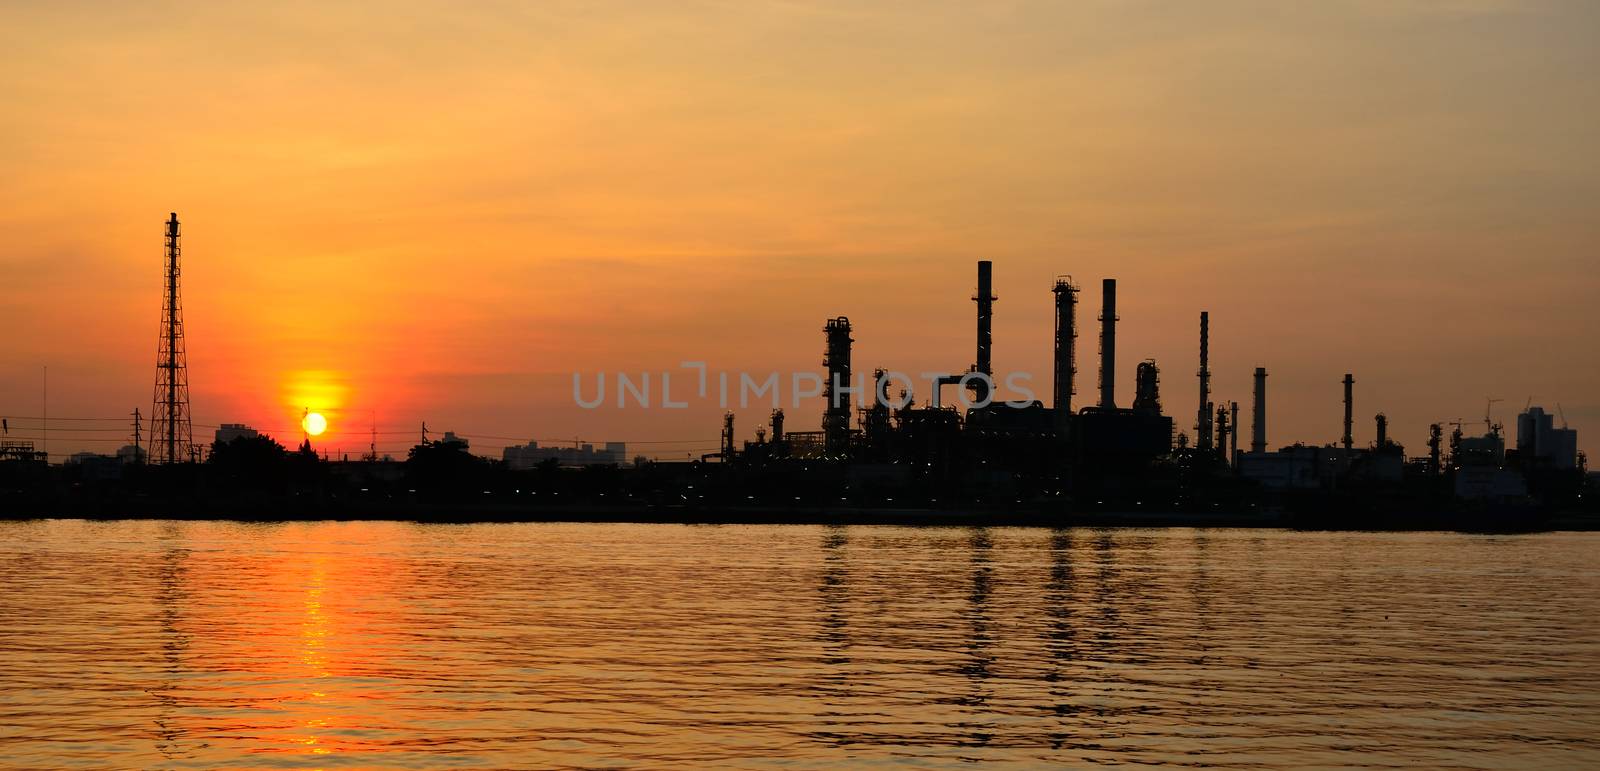 Sunrise scene of Oil refinery by pixbox77